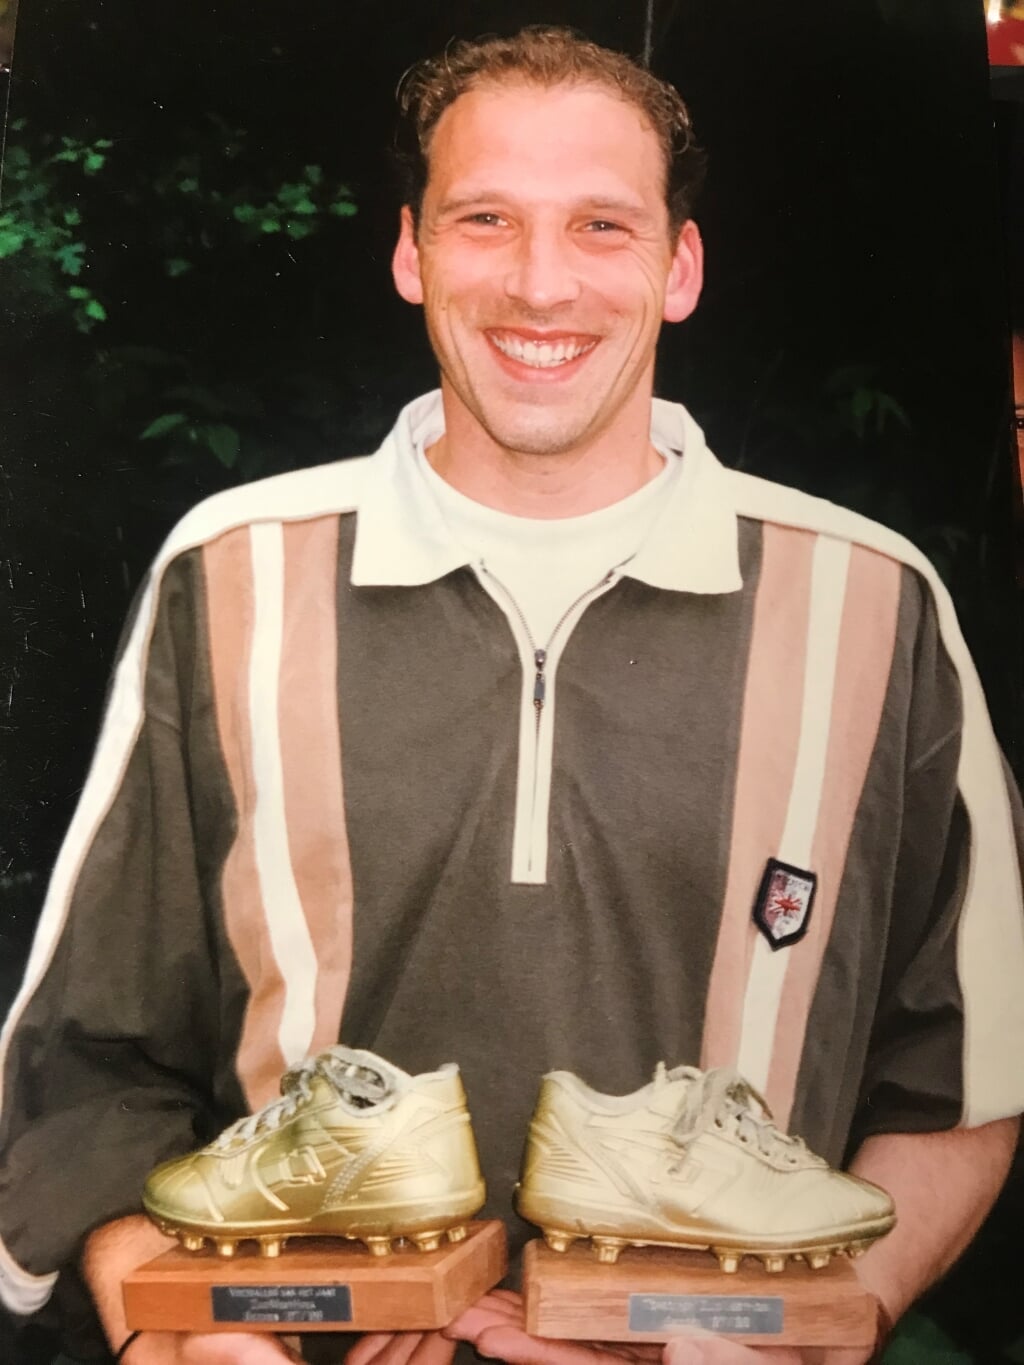 1999: Dave Roels voetballer en topscorer van het jaar.